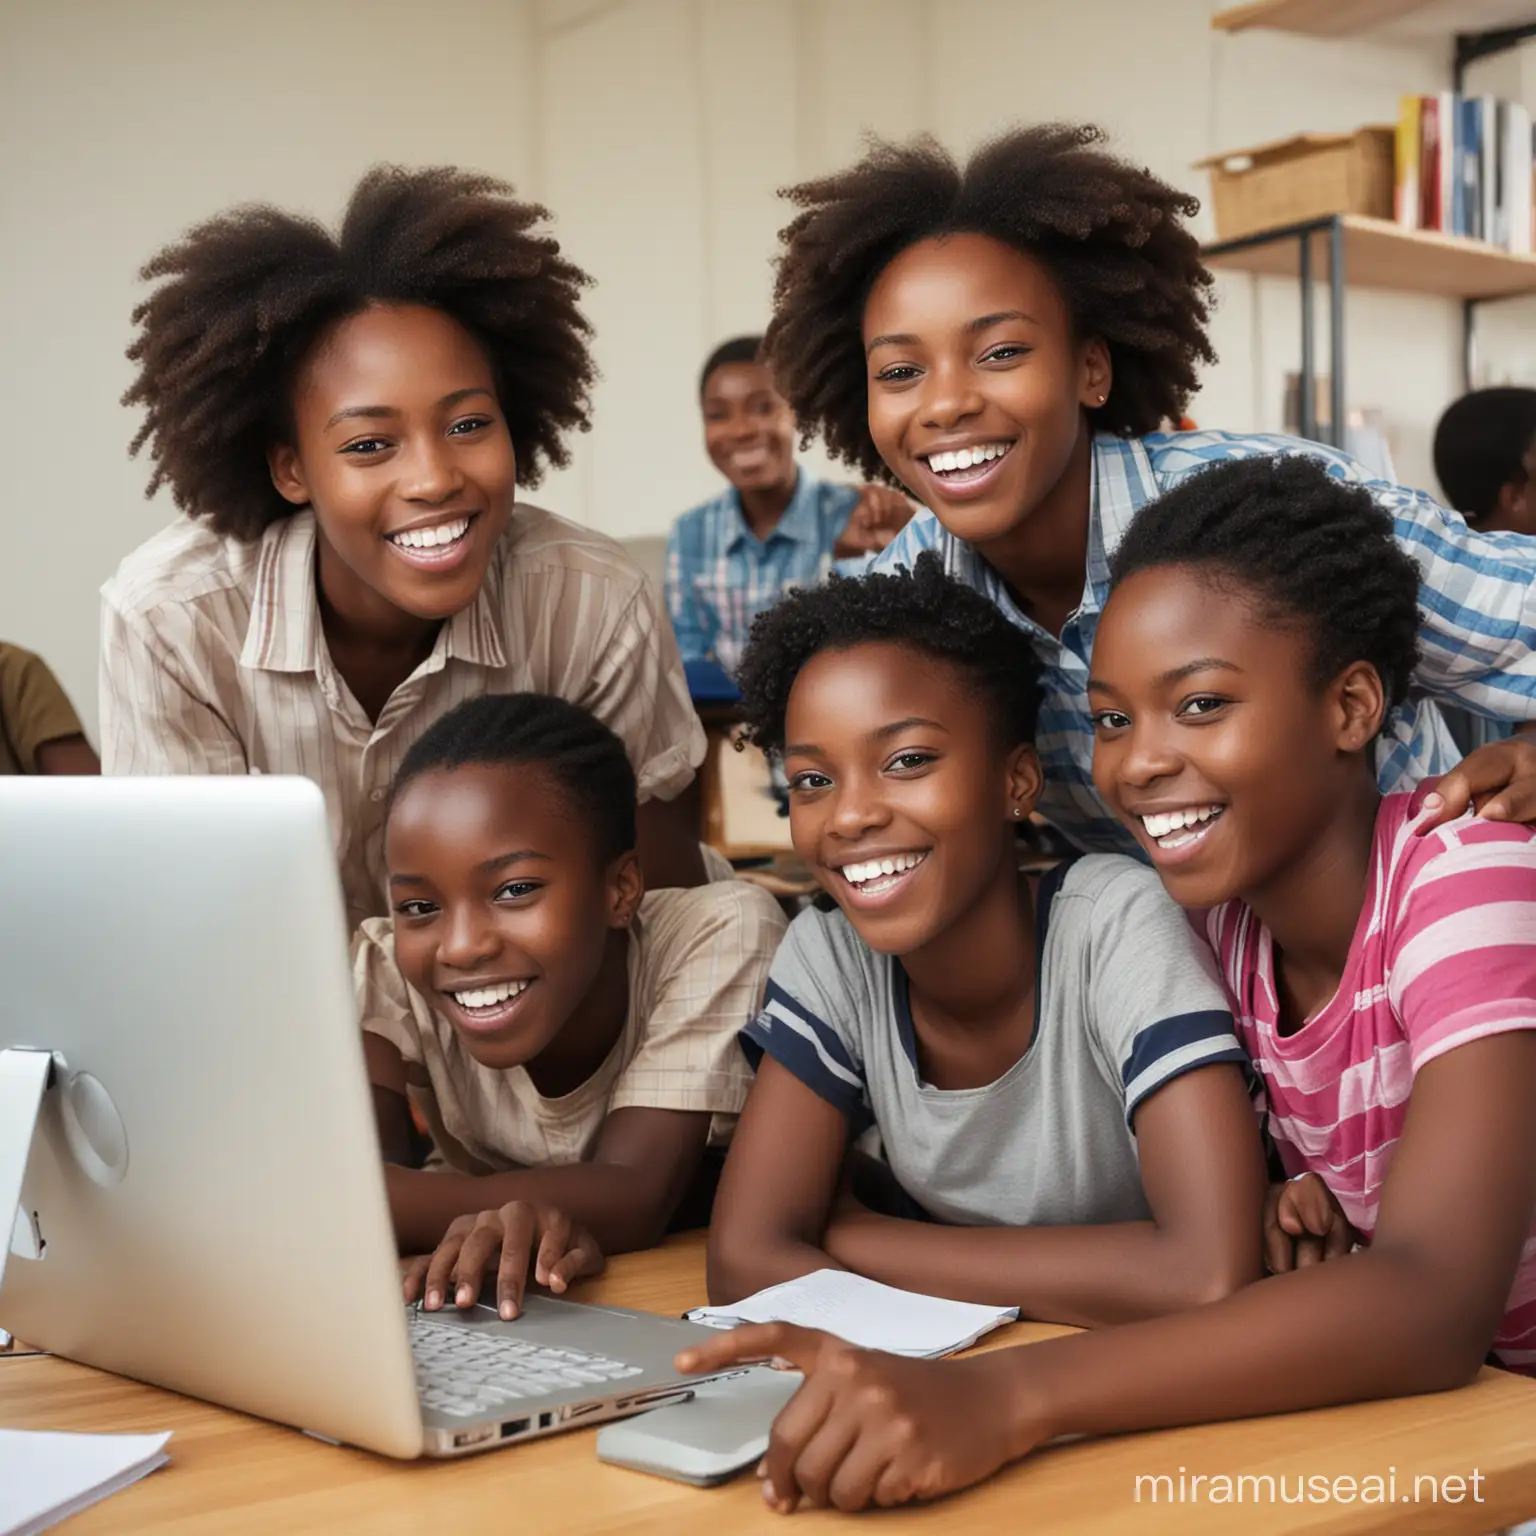 des élèves africains devant un ordinateur tous joyeux